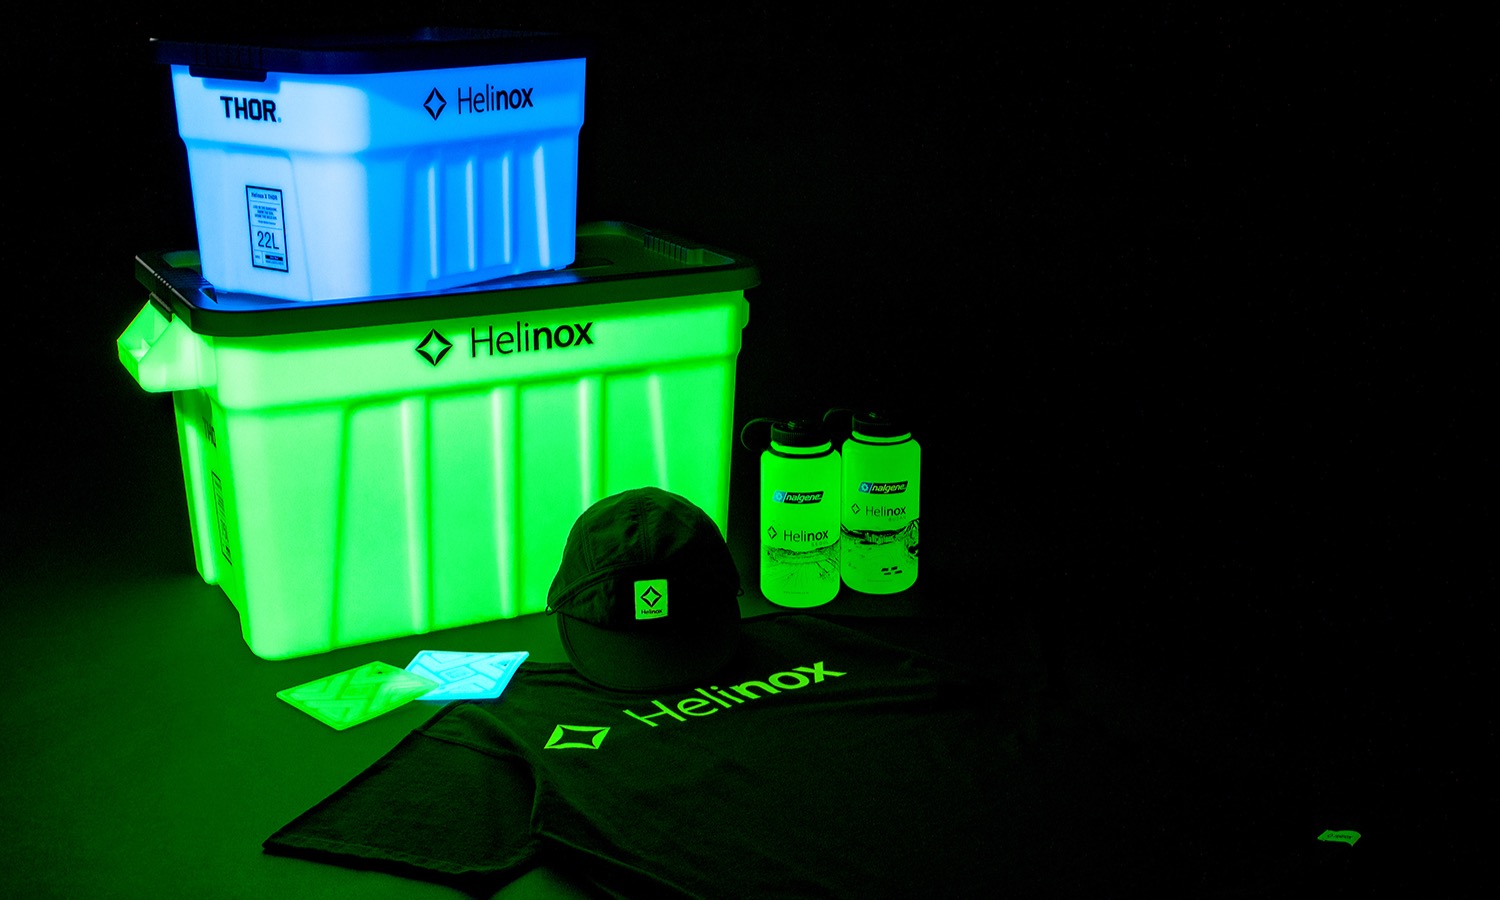 Helinox 推出全新「Glow Edition」夜光系列产品